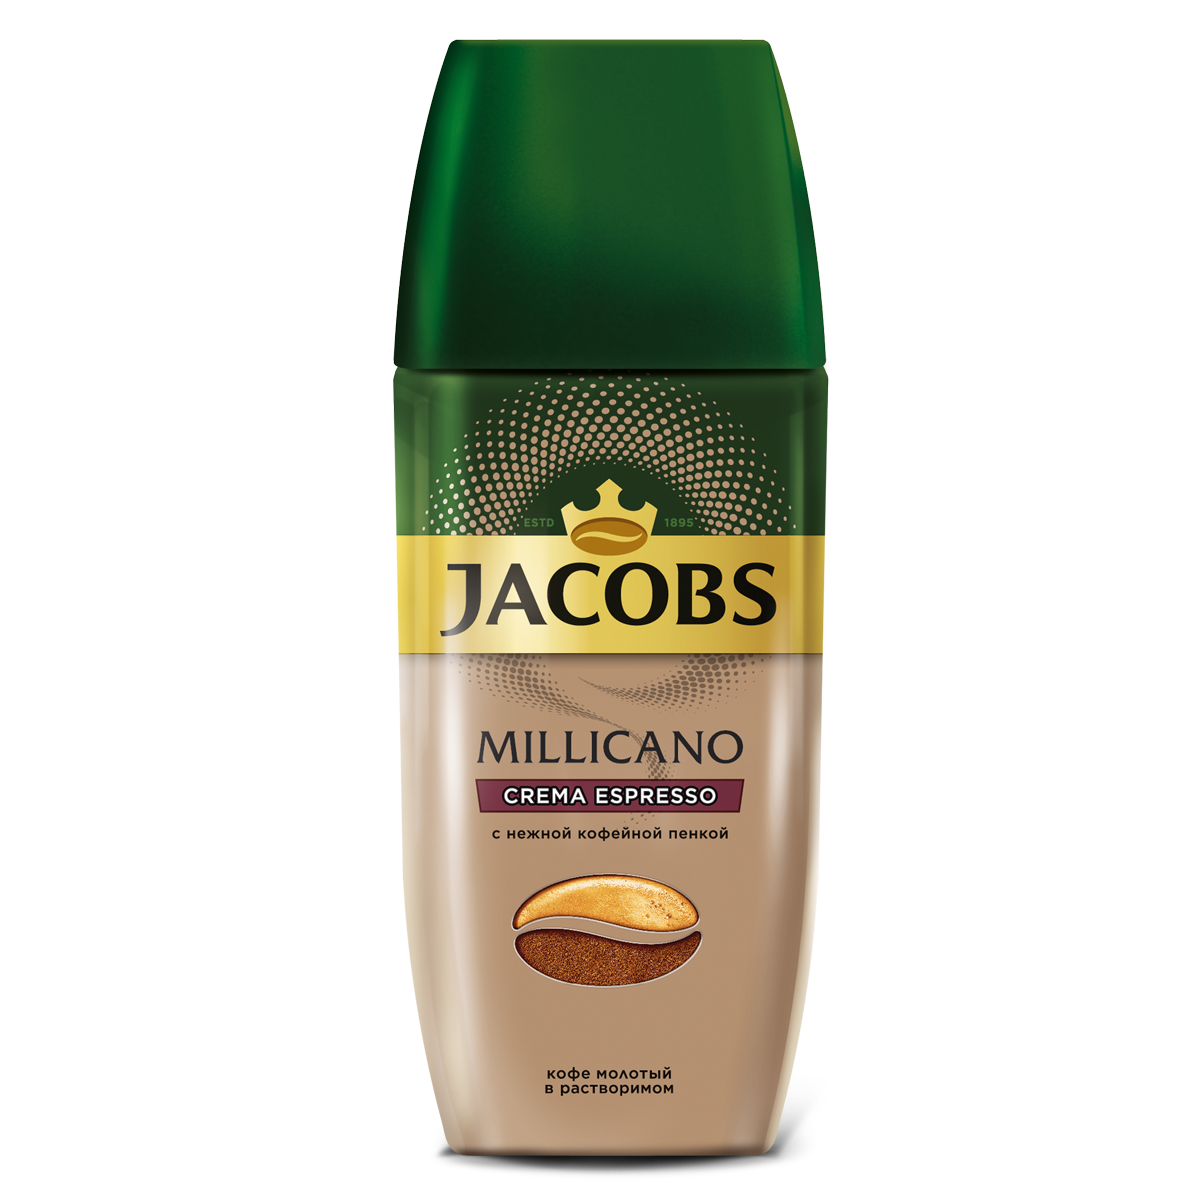 Кофе растворимый миликано. Jacobs Millicano кофе растворимый 95 г. Кофе Якобс Милликано крема эспрессо. Кофе Якобс Милликано молотый. Jacobs Millicano crema Espresso.